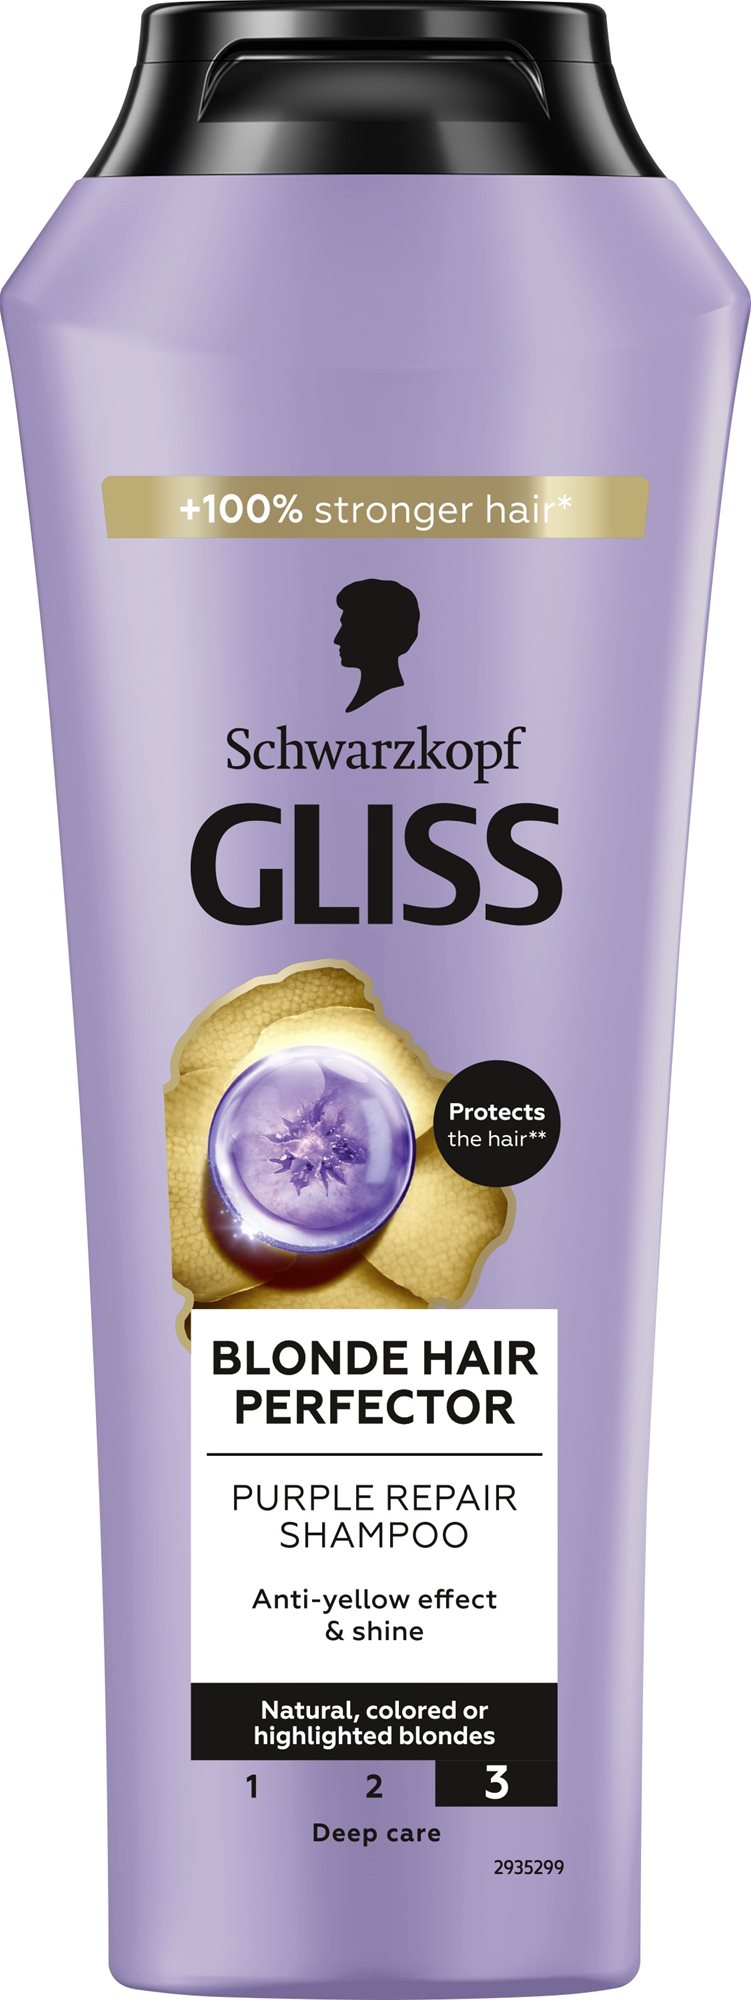 SCHWARZKOPF GLISS Blonde Hair Perfector Shampoo 250 ml